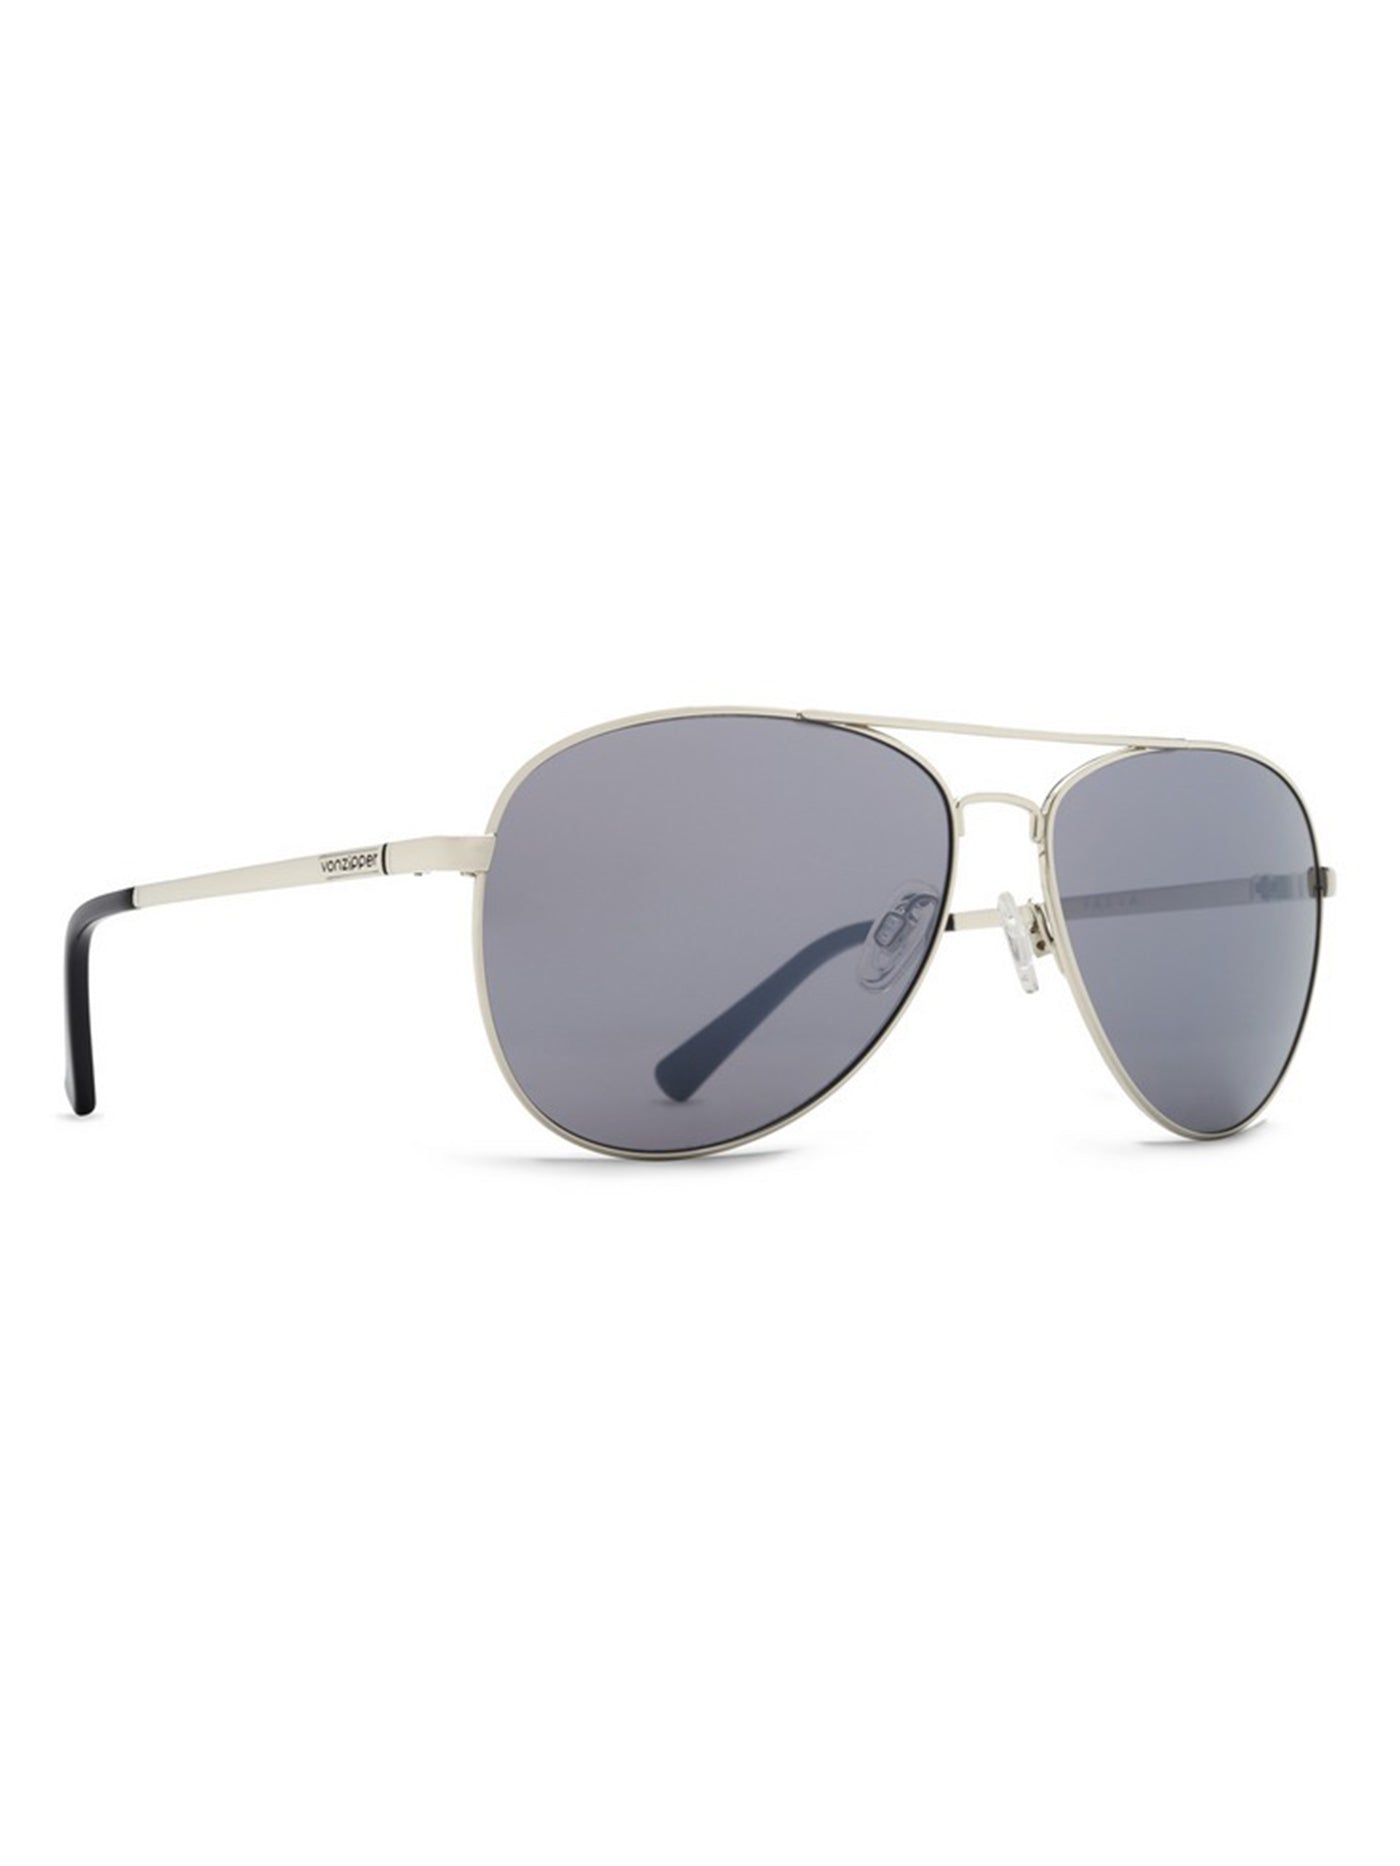 Von Zipper Farva Silver/Grey Chrome Sunglasses